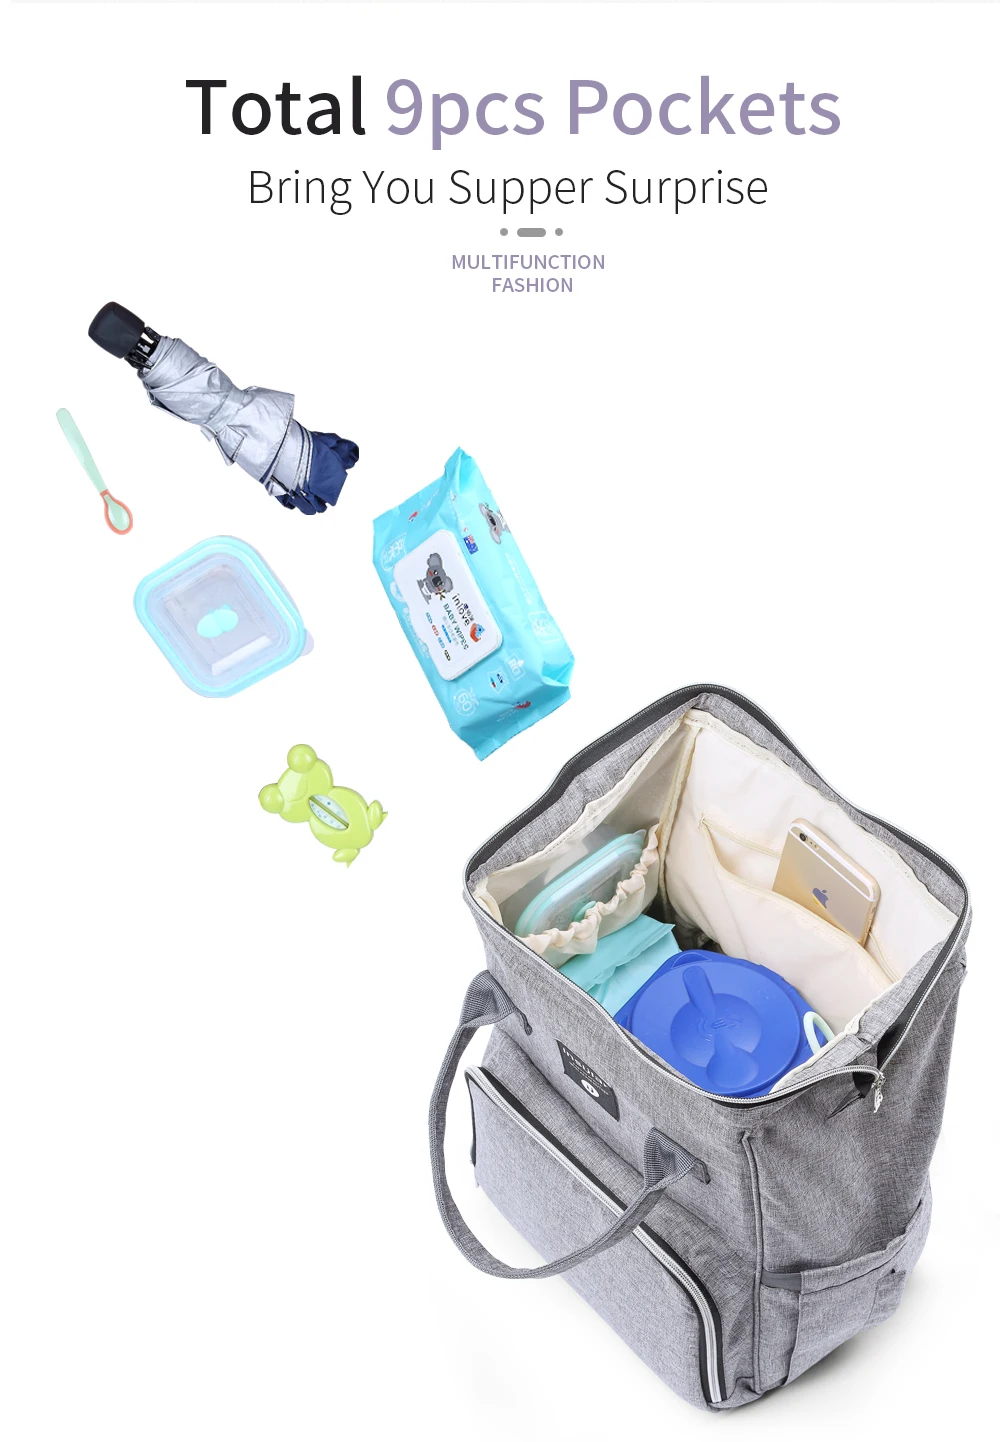 UOSC модный рюкзак женский рюкзак для отдыха корейский женский рюкзак Повседневная дорожная школьная сумка для девочек классический рюкзак для мамы